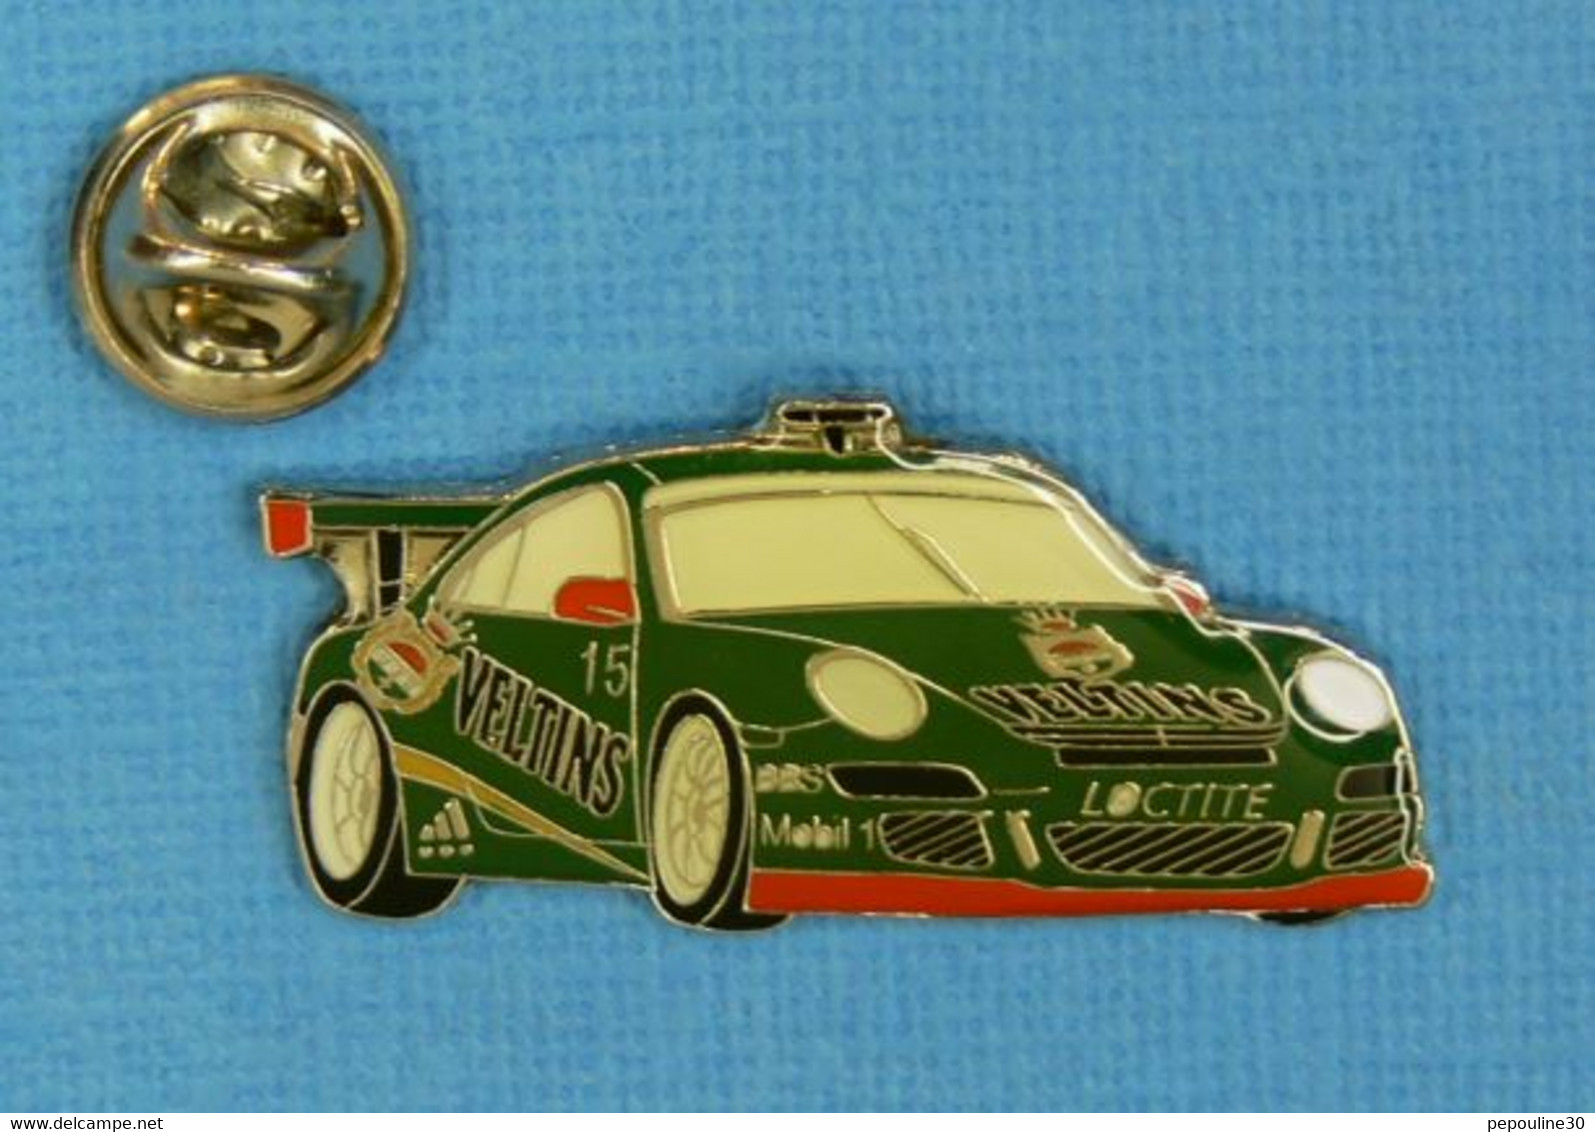 1 PIN'S //  ** PORSCHE 911 / VELTINS N°15 / 1997 ** - Porsche